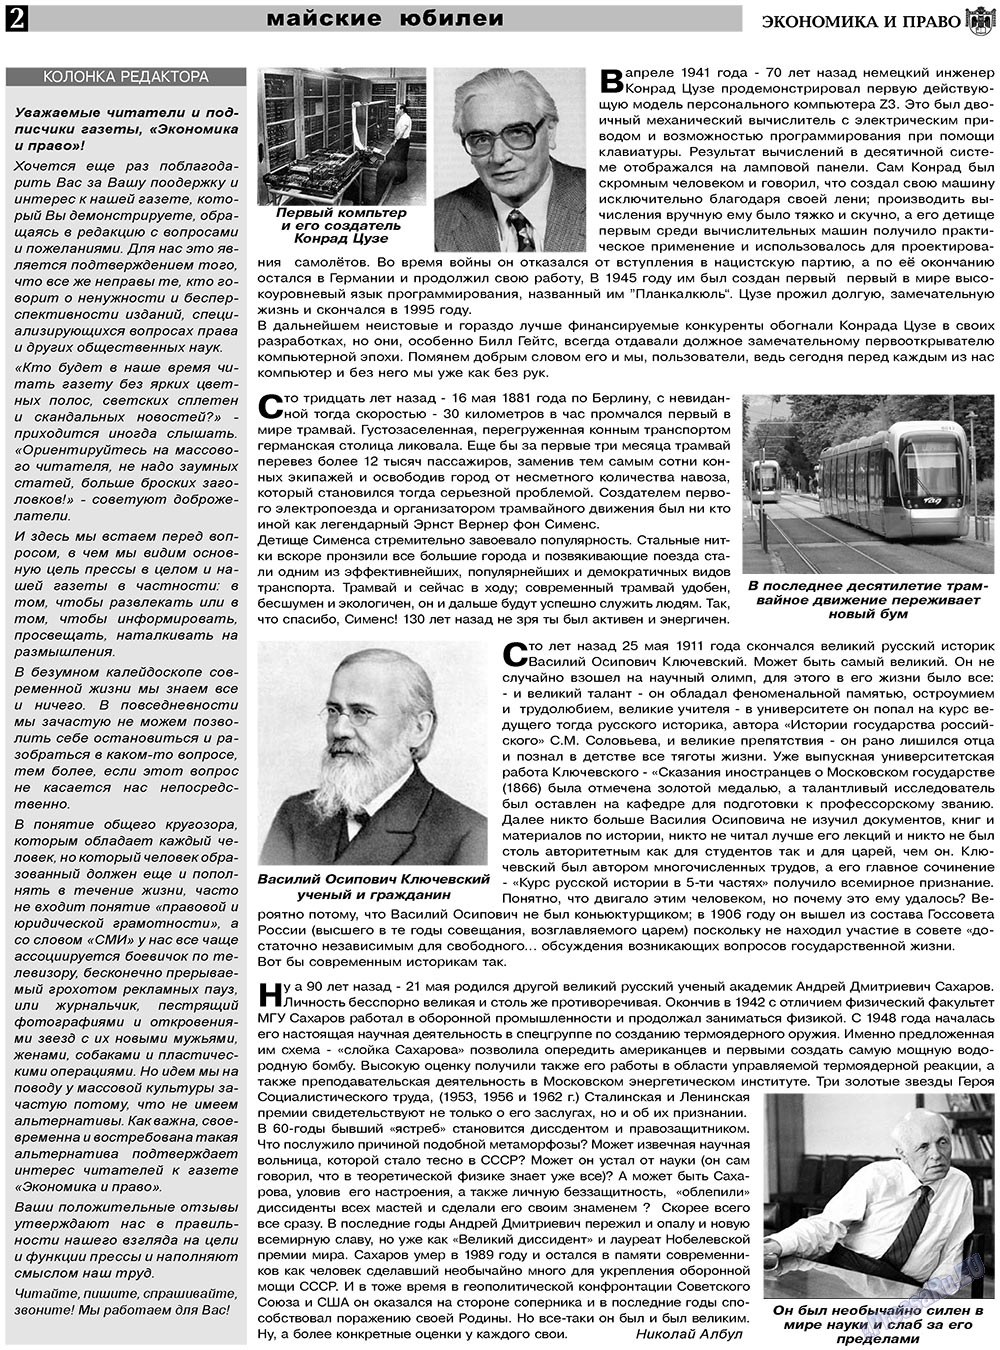 Экономика и право, газета. 2011 №6 стр.2